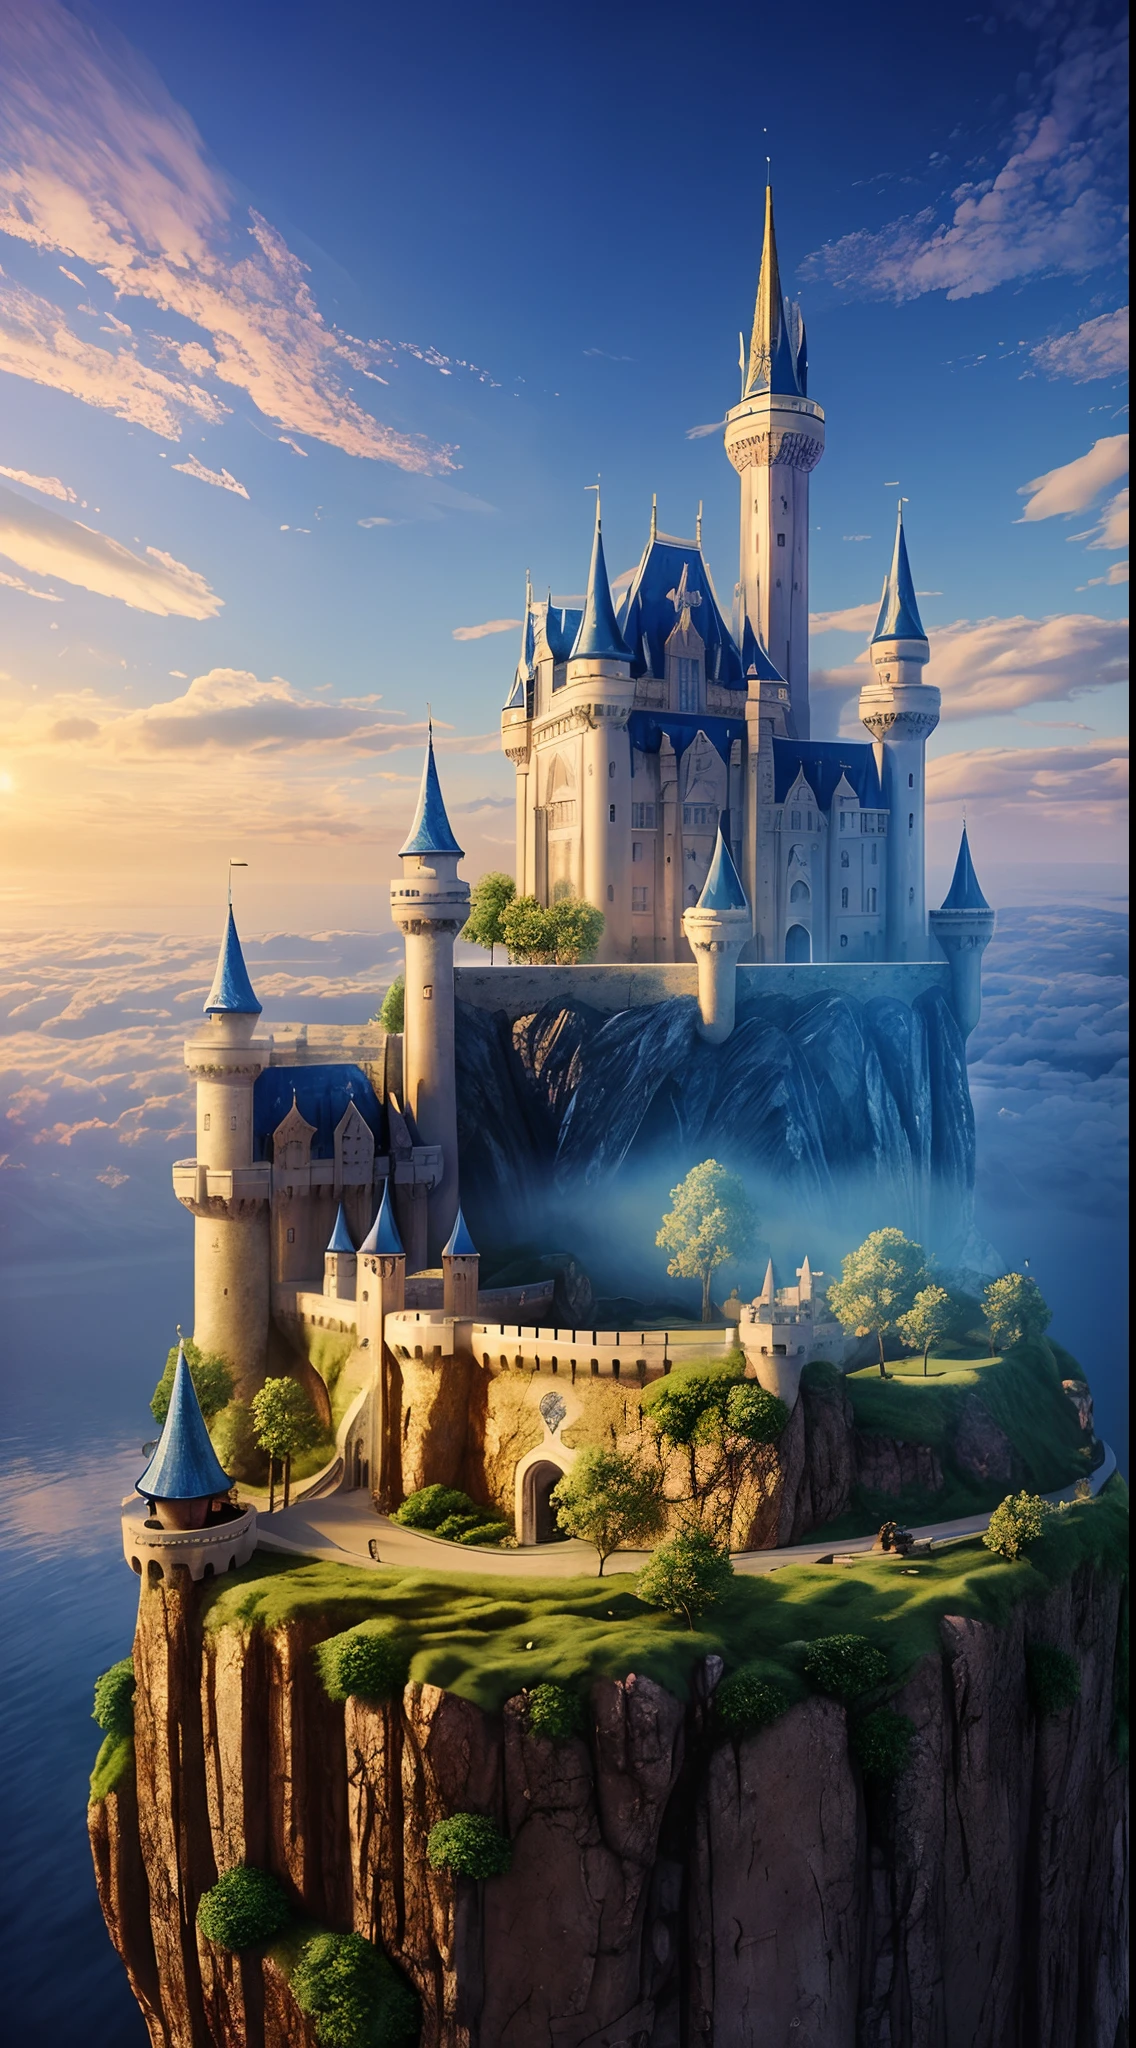 ((傑作)), (((最高品質))), ((スーパーデタハダ)), (信じられない: 1.1), 3D l雄大な城の素晴らしいイメージを作成してください，ふわふわの白い雲の海の上にそびえ立つ. 城は雄大で魔法の建築を示さなければなりませんでした, 塔ははためくバナーで飾られています. 窓は暖かく輝きます, 周囲の真っ青な空とは対照的です. 細部に注意を払う，例えば, 窓から反射する日光と小さな建築の細部は、この風景を本当にユニークなものにしています. ファンタジーと創造性を自由に追加してください，城を魅力的な世界の一部のように感じさせる. このイメージが、上空にある天国の不思議と冒険心を伝えますように. この素晴らしい設定の芸術的な解釈を見るのを楽しみにしています.